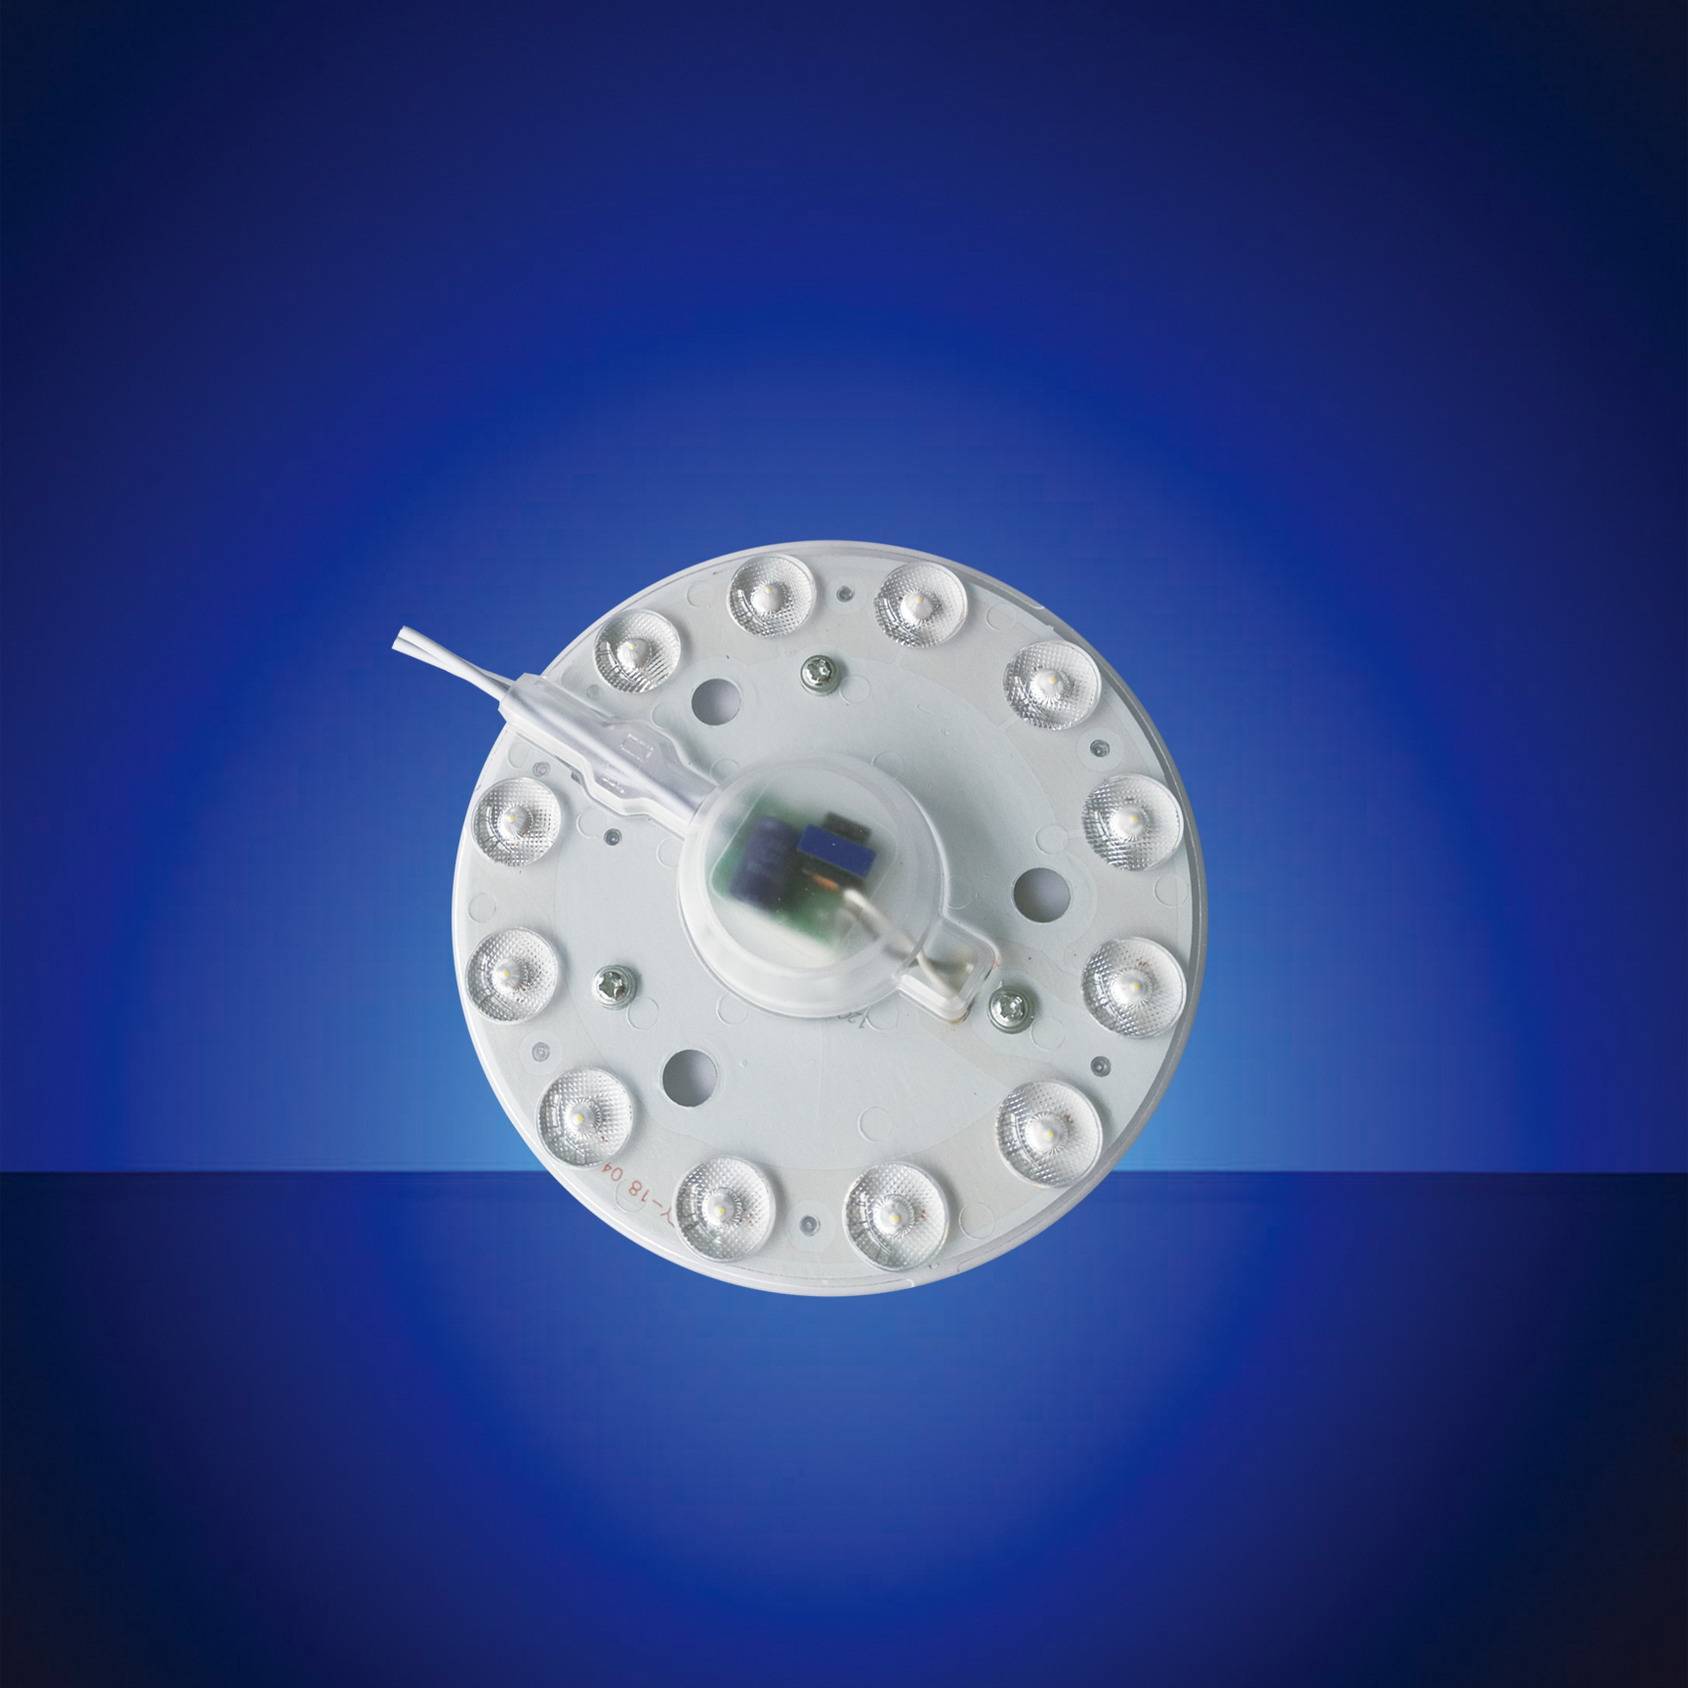 LED光源产品配件MC-4 2-1